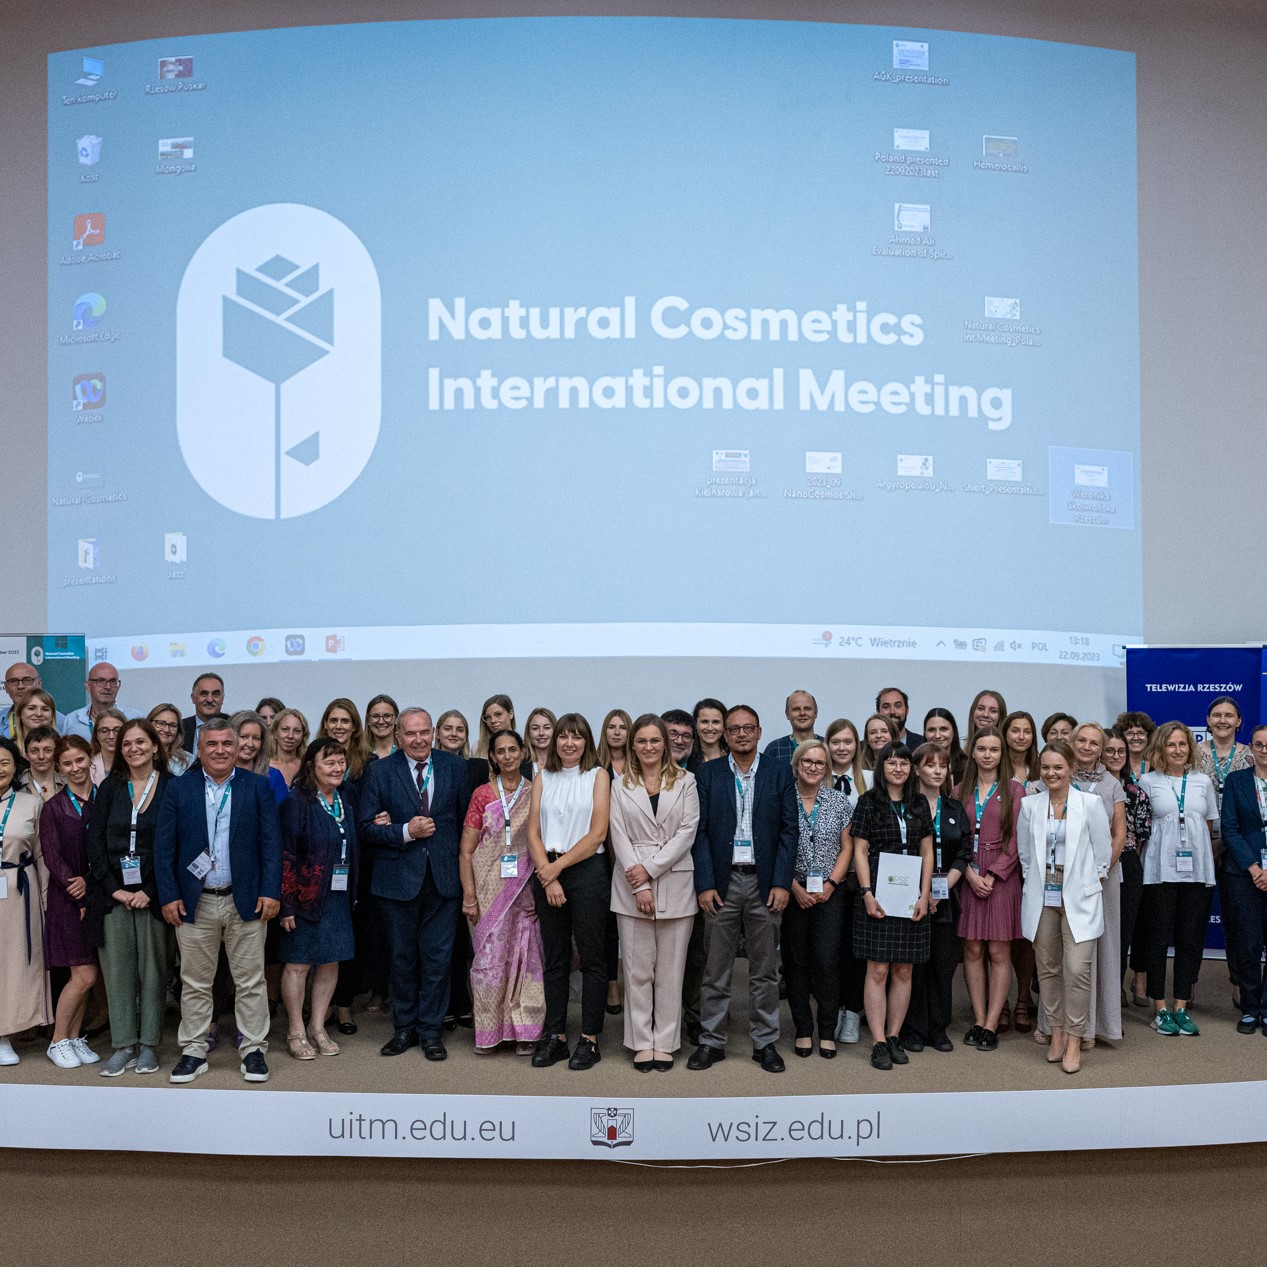 Kosmetyki naturalne w roli głównej – relacja z II edycji Natural Cosmetics International Meeting